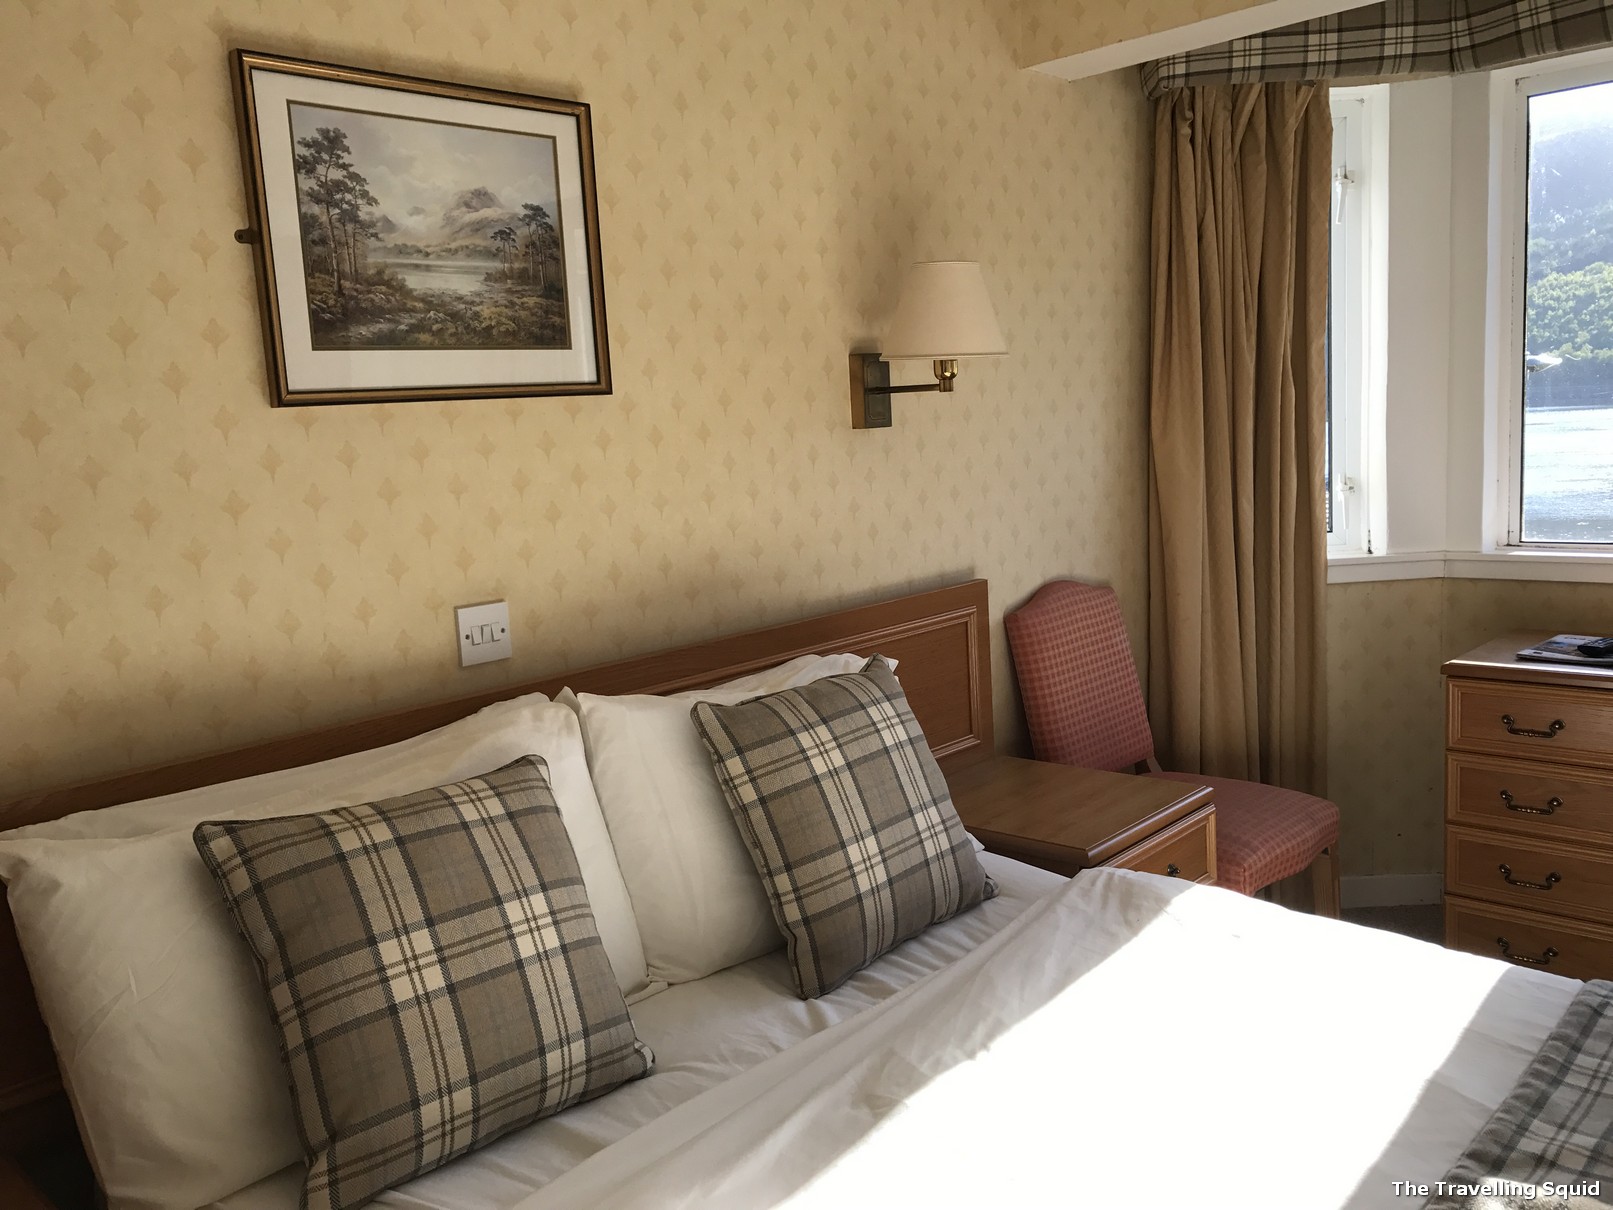 Loch Long Hotel in Arrochar Scotland